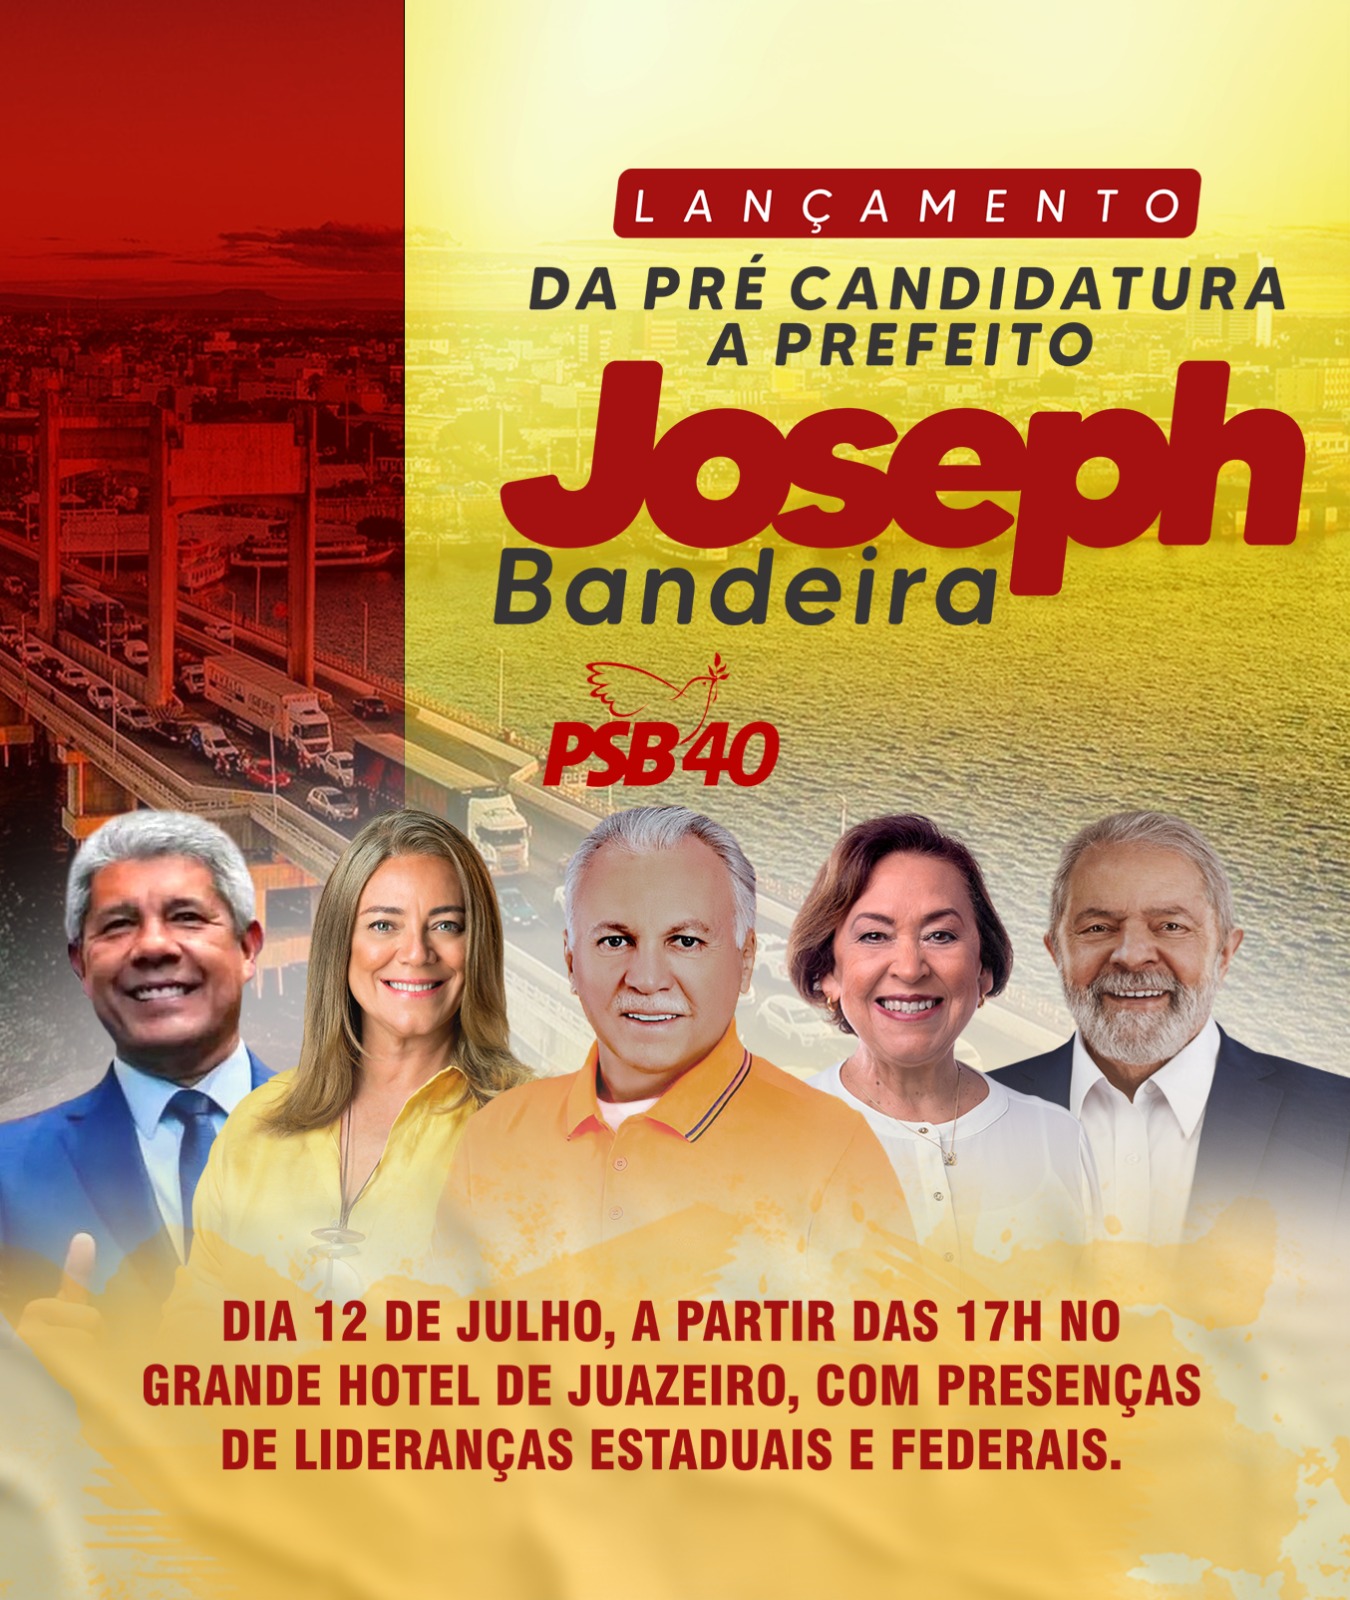 Confirmada: Pré-candidatura de Joseph Bandeira será lançada oficialmente na sexta, dia 12